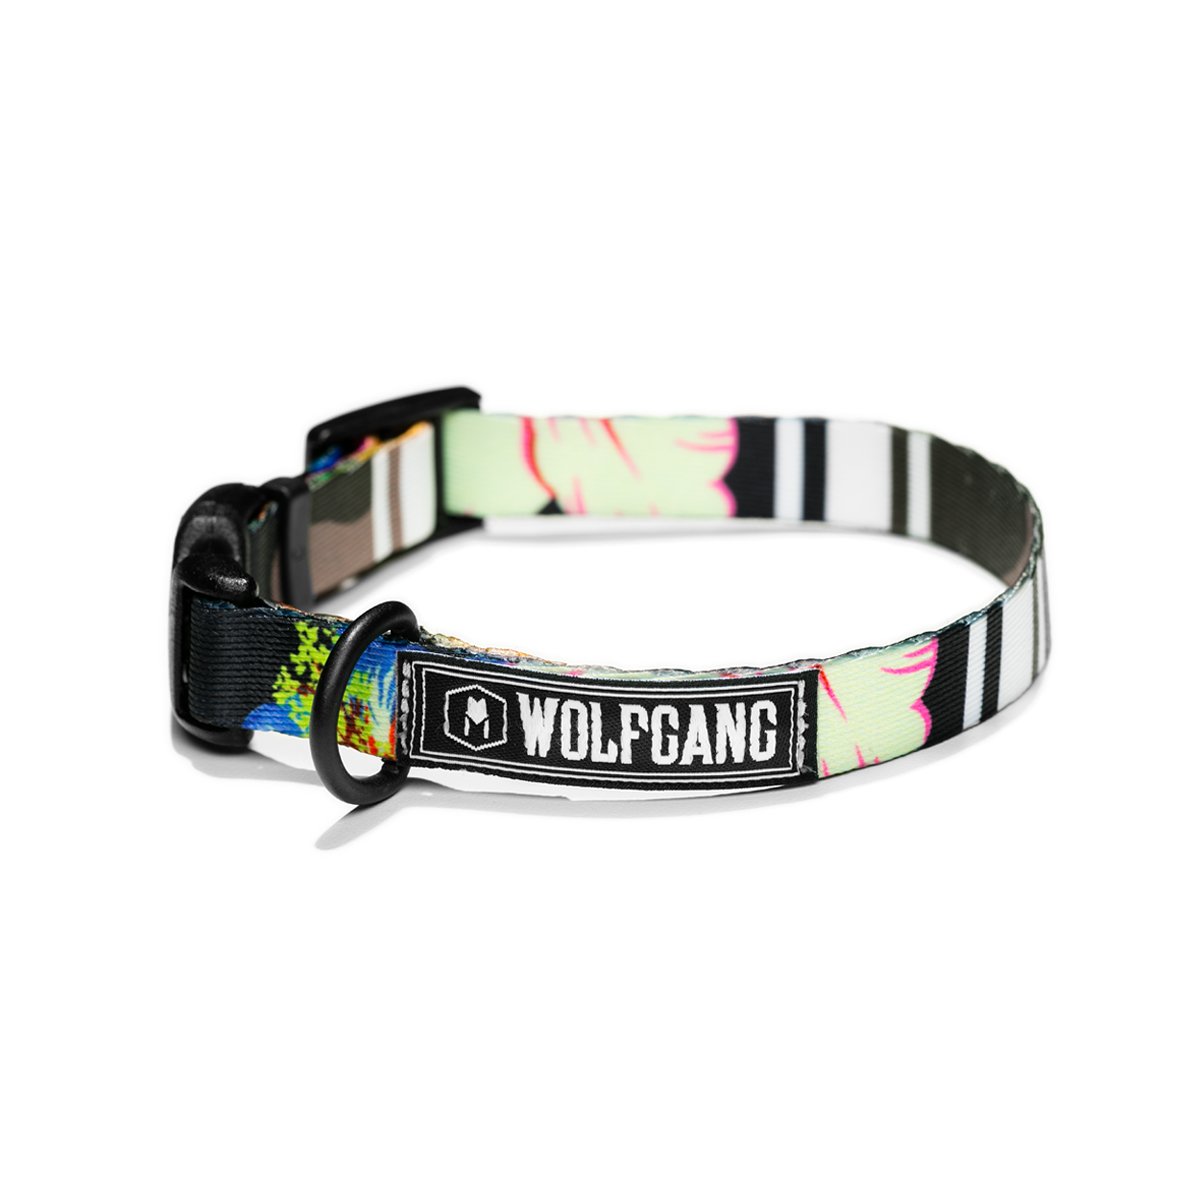 Wolfgang Dog Collar - Street Logic-5/8" Wide